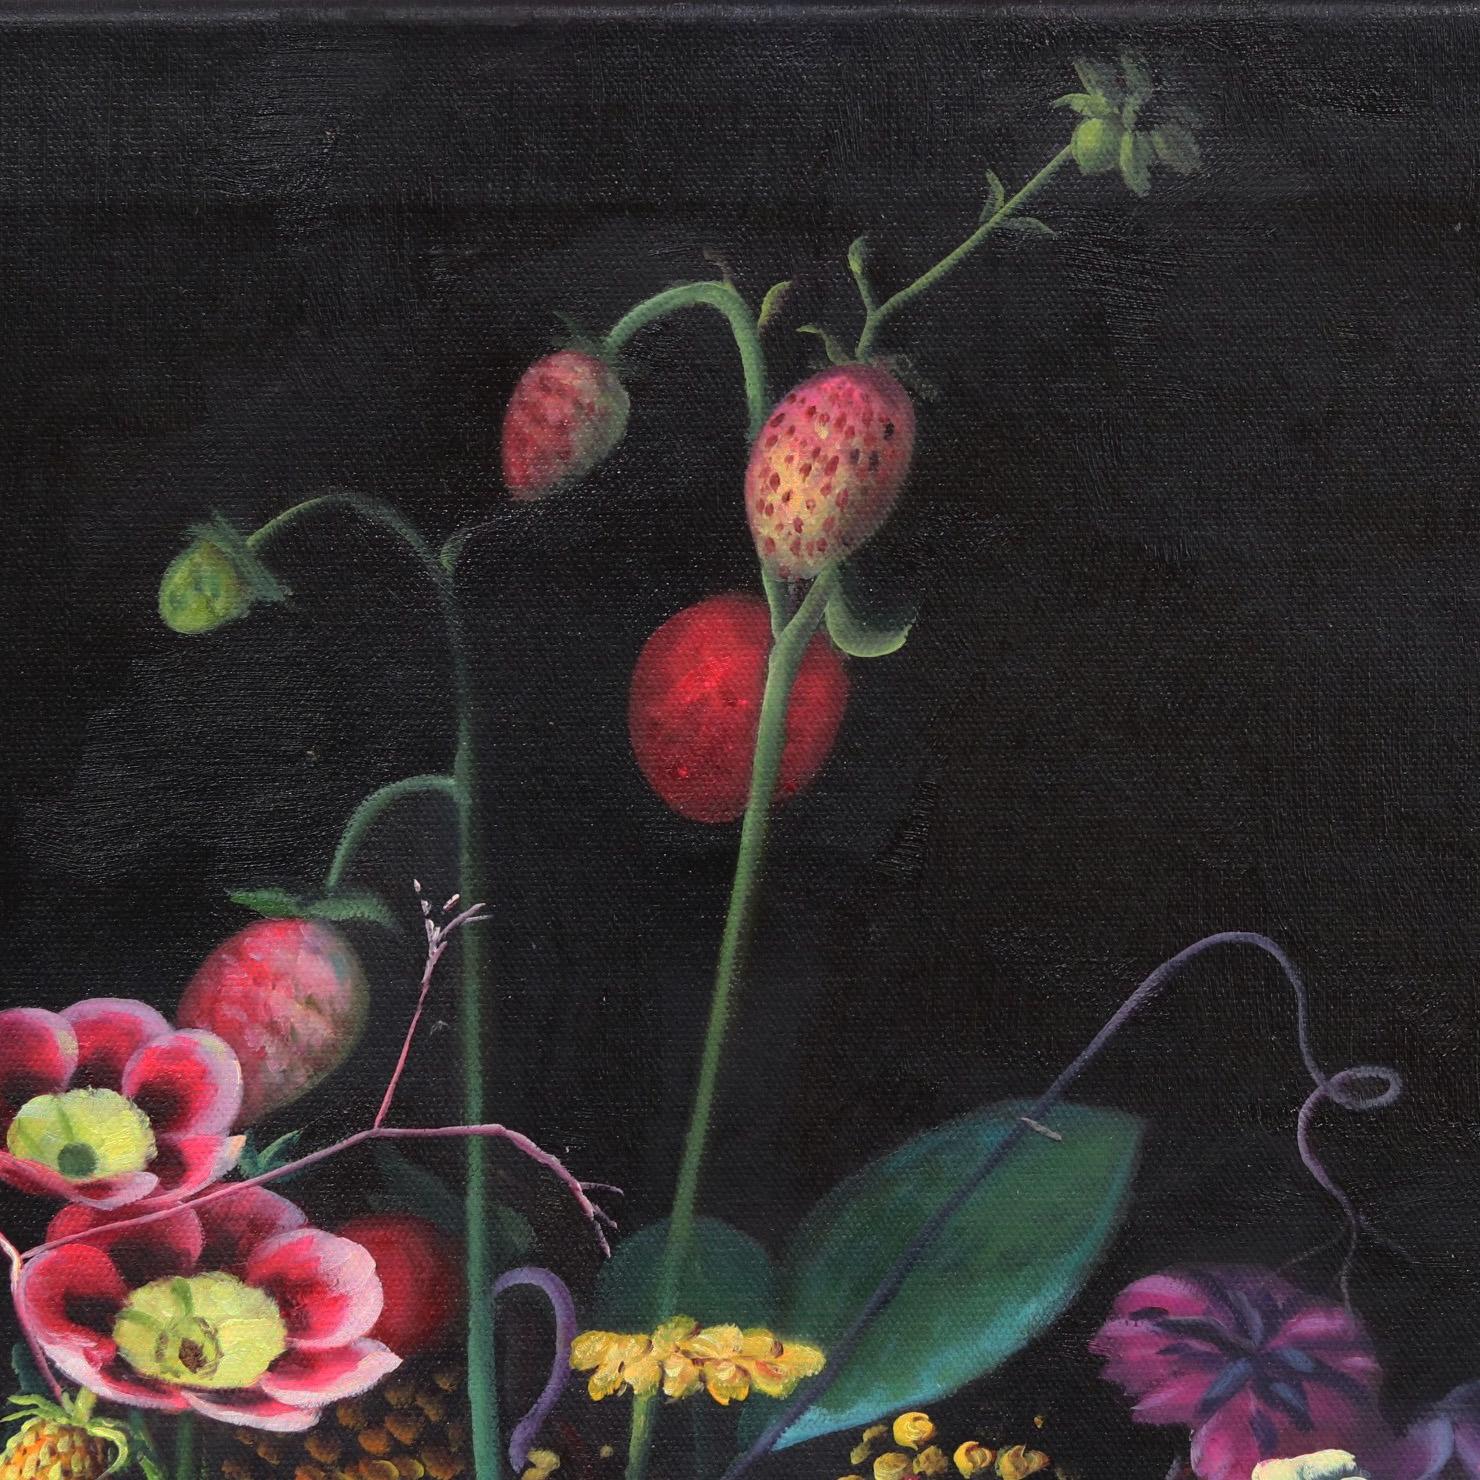 Inspirée par les peintures des maîtres anciens et par la nature immersive de la Forêt Noire, l'artiste allemande Katharina Husslein peint de manière représentative et hyperréaliste pour capturer des bouquets vivants et des paysages saturés. Les